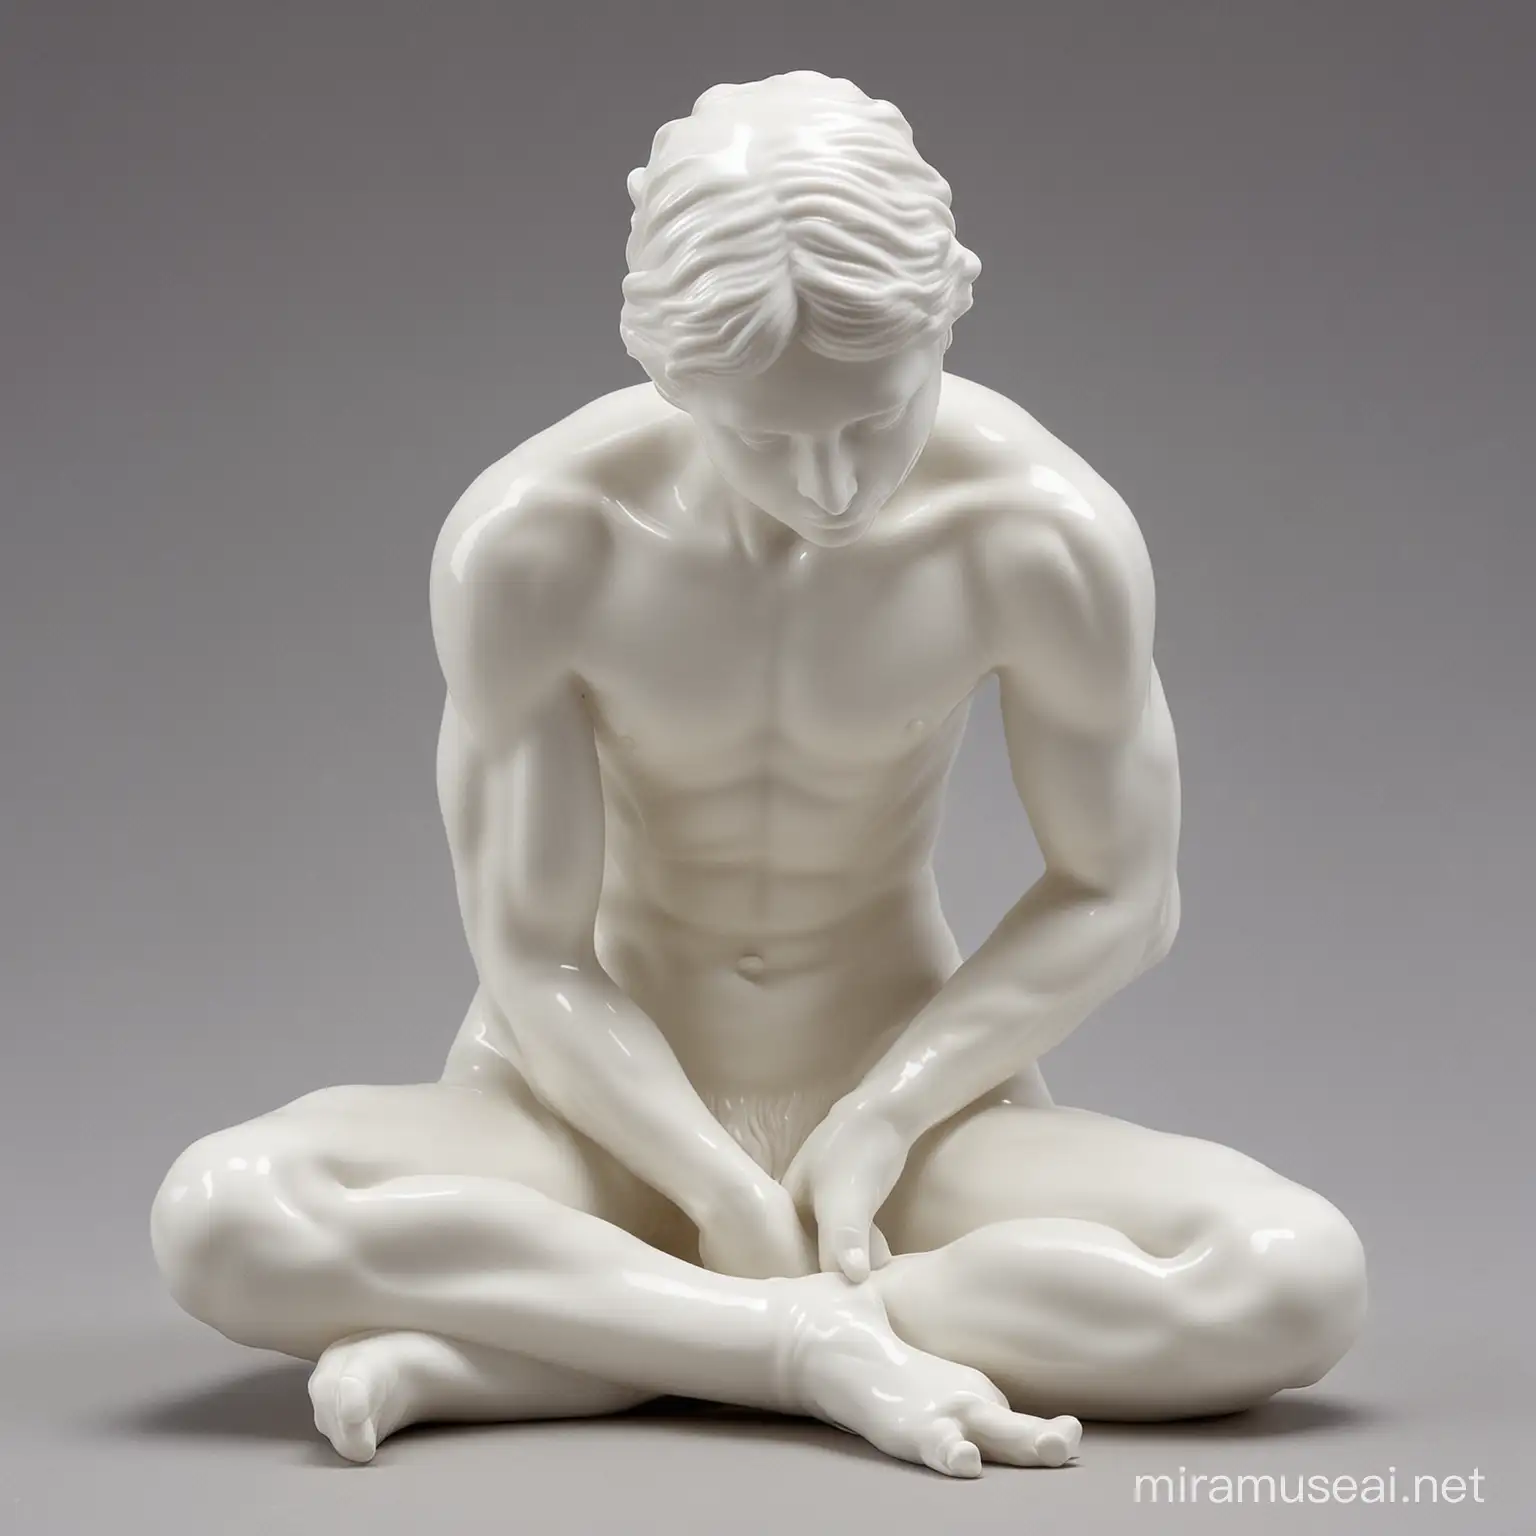 komplett weiße porzelanfigur, figur wie bei Rodin




